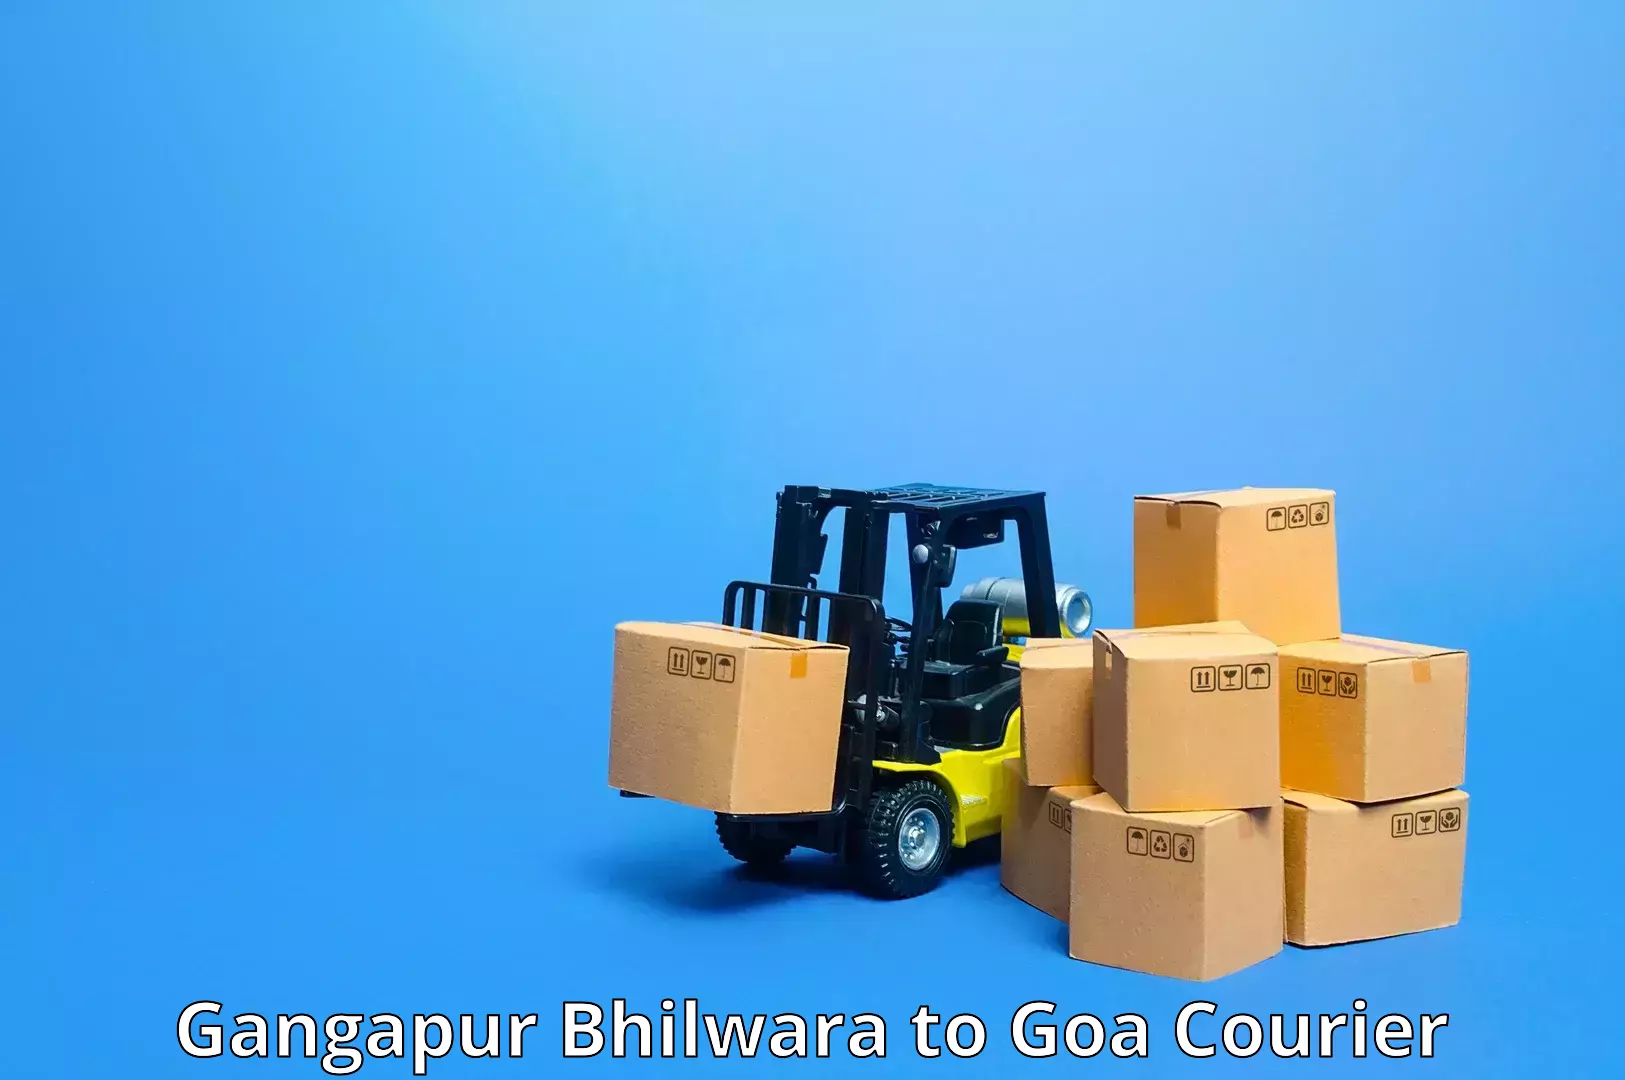 Customer-centric shipping in Gangapur Bhilwara to Panjim